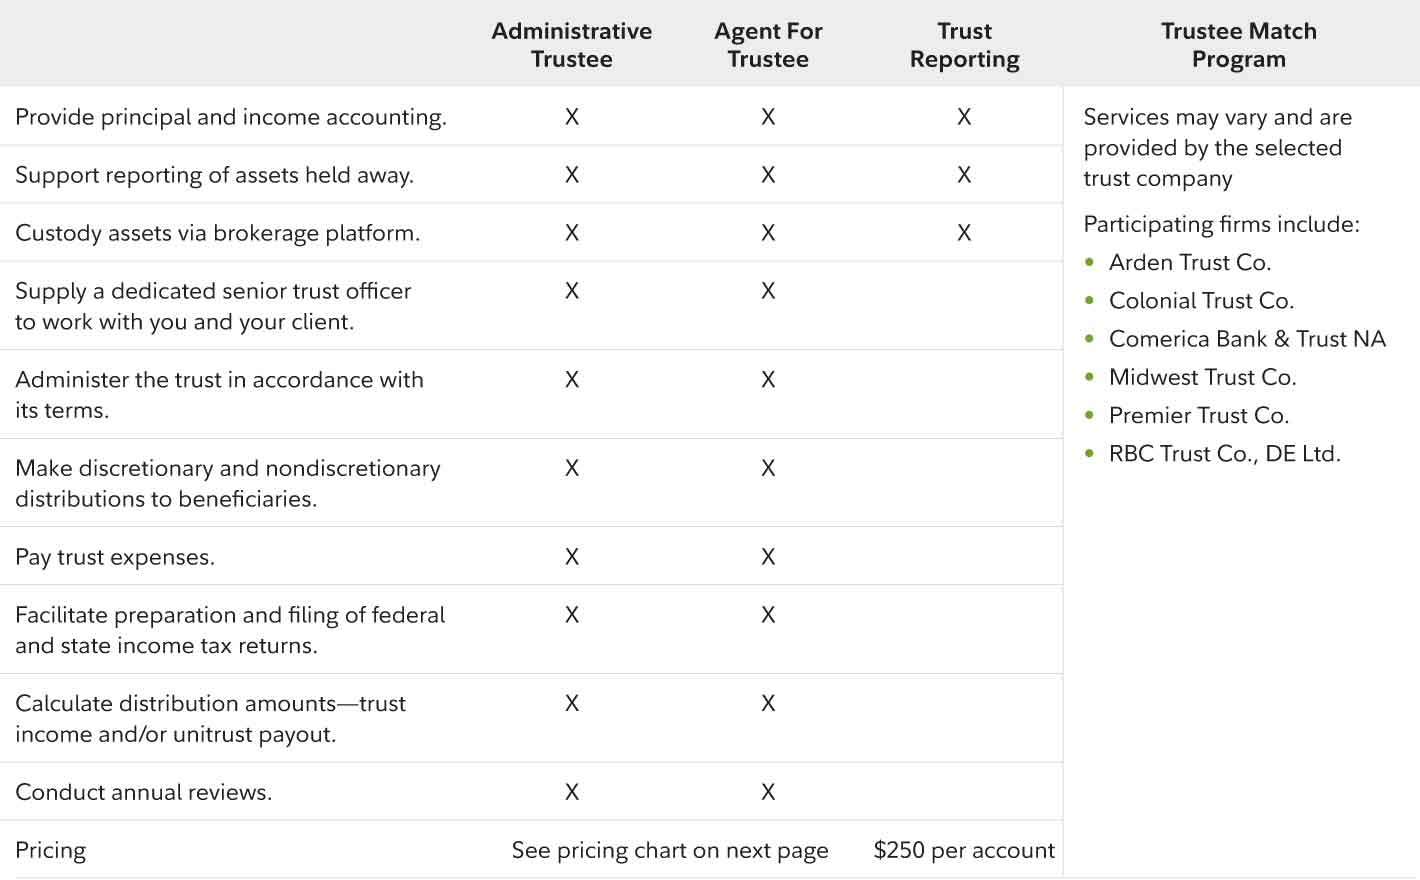 Trust Services comparison chart